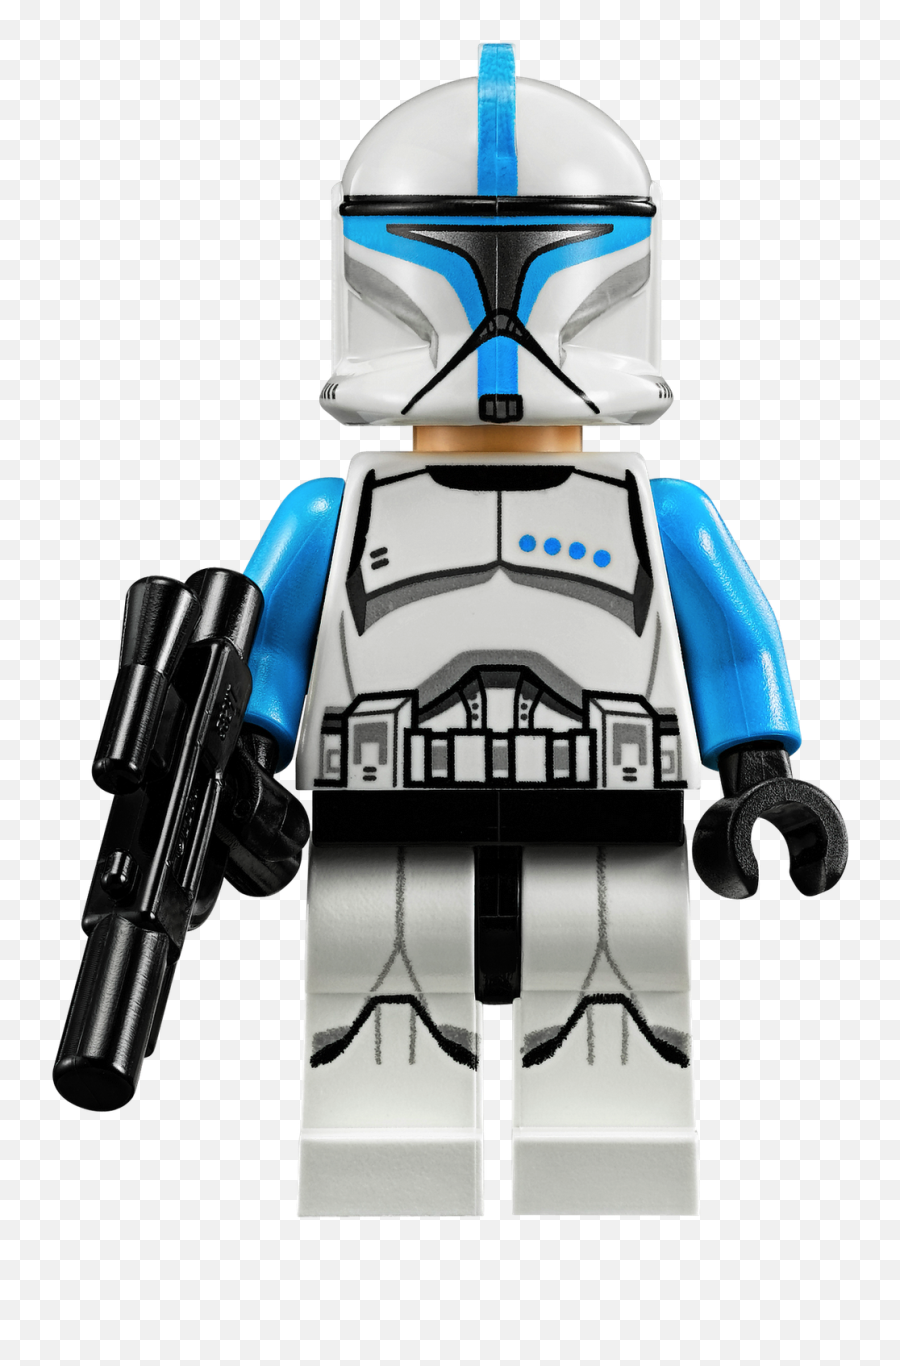 Clone Trooper Lieutenant - Lego Clone Trooper Lieutenant Png,Clone Trooper Png